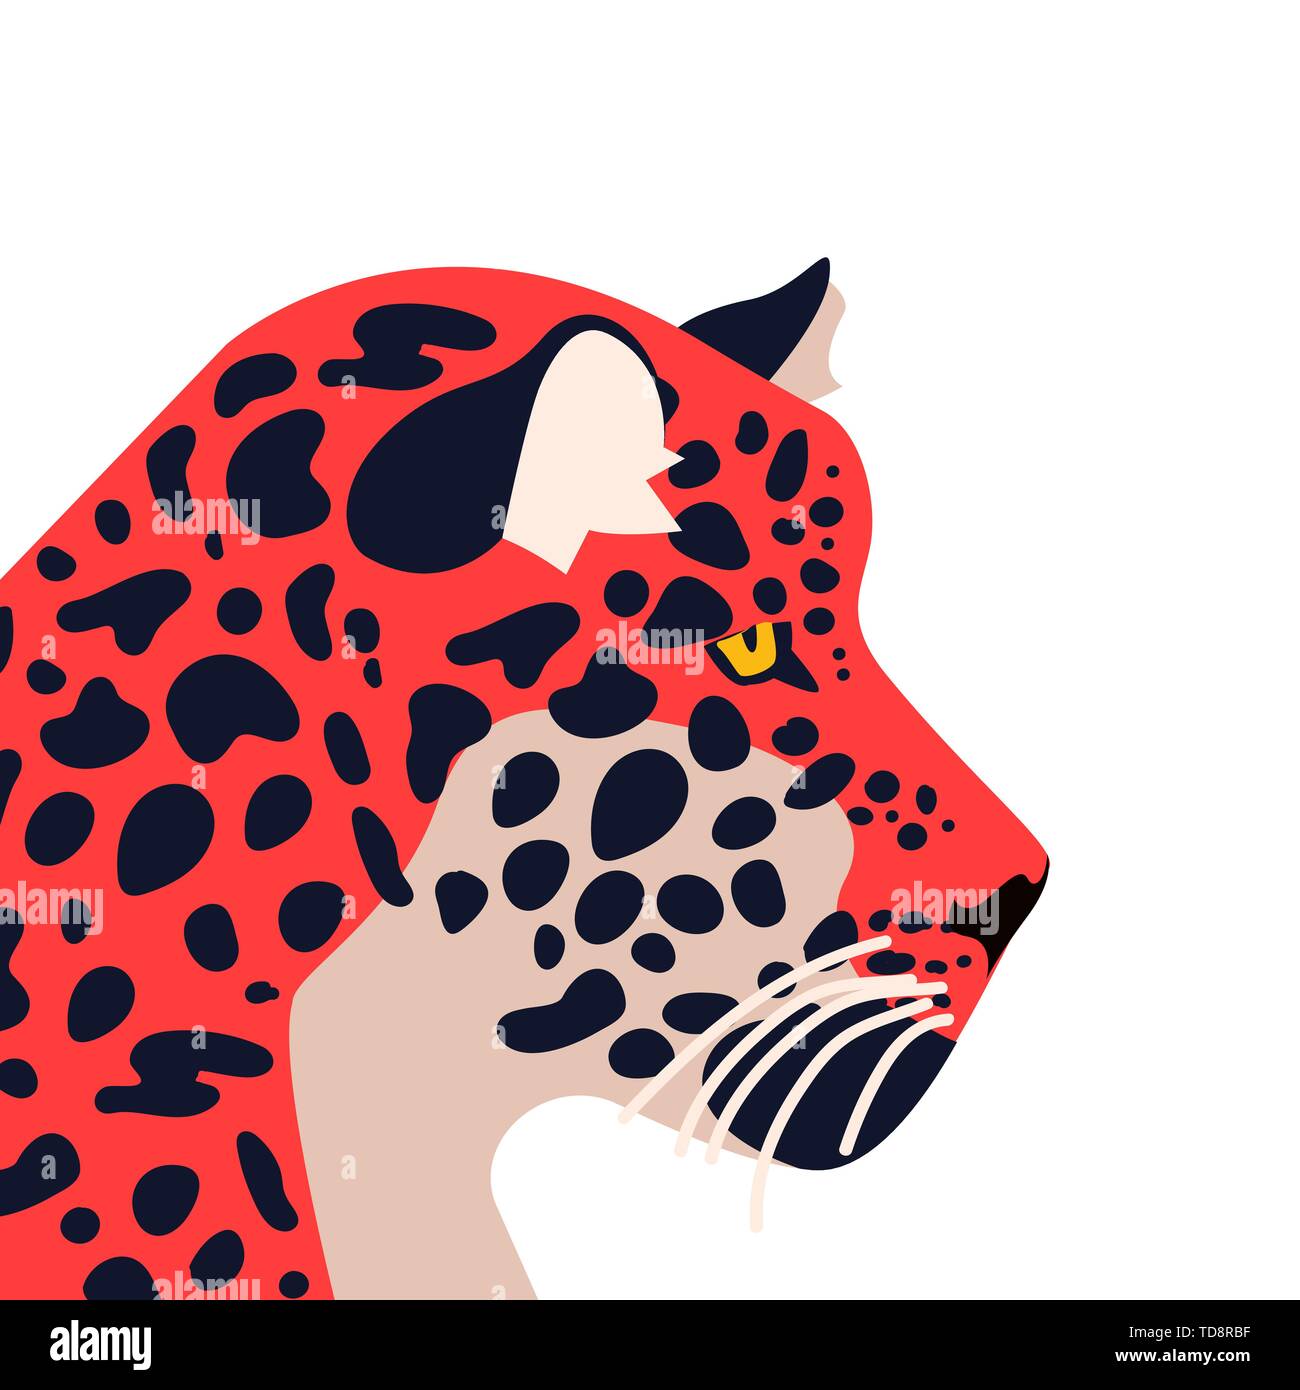 Wild Jaguar Tier Abbildung. Hand gezeichneten Tiger oder Katze auf isolierten weißen Hintergrund. Stock Vektor